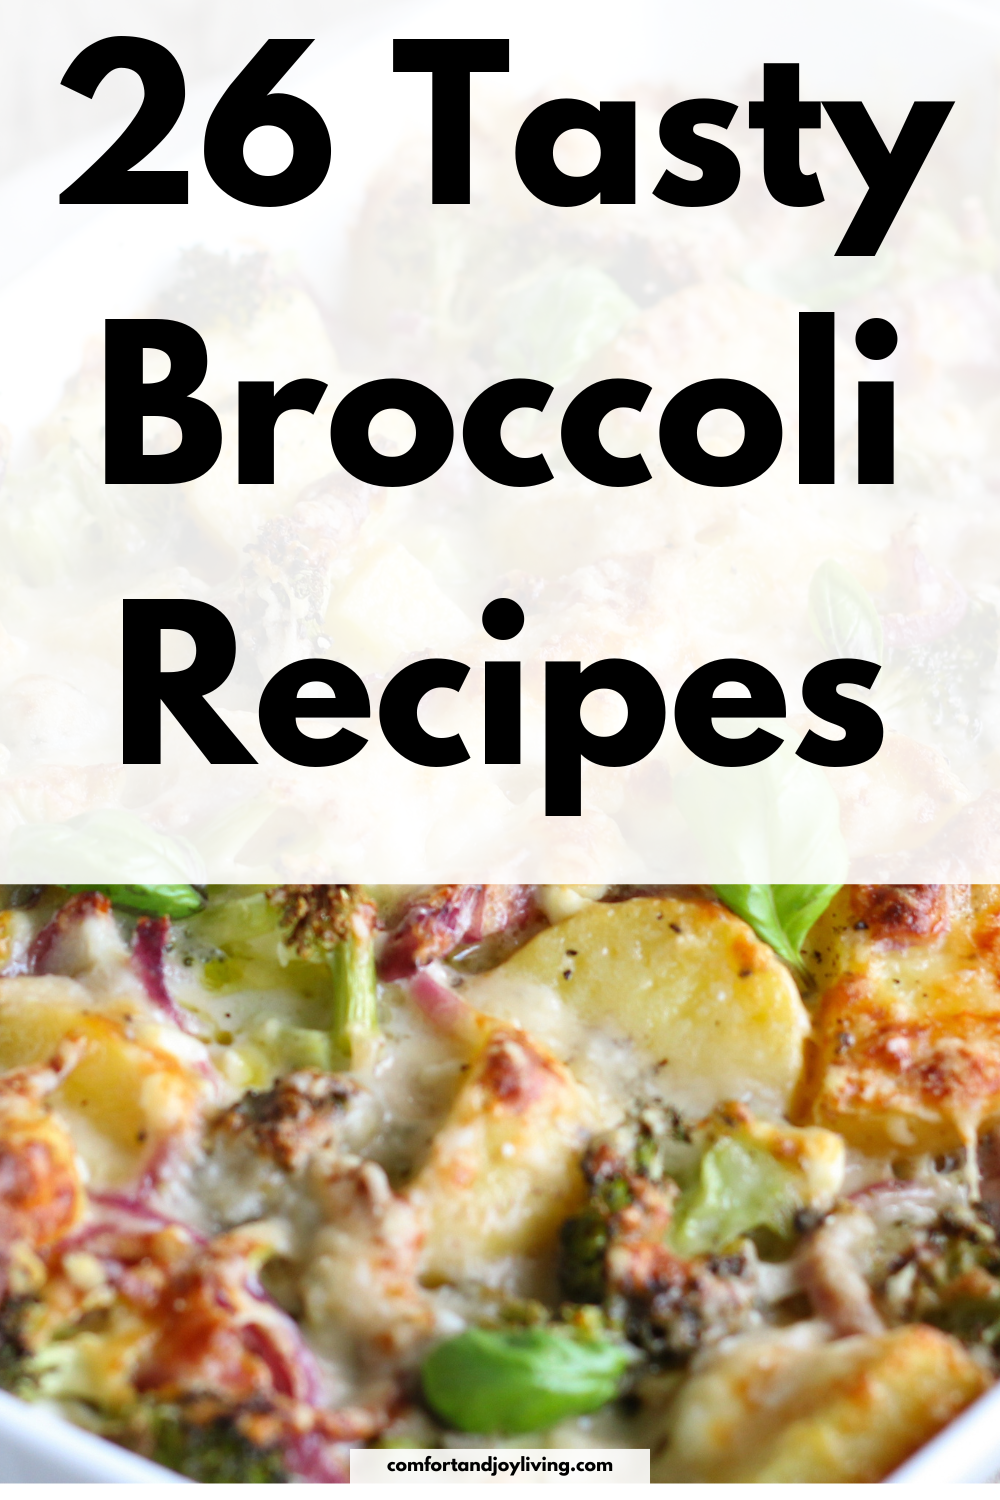 26 Tasty Broccoli Recipes